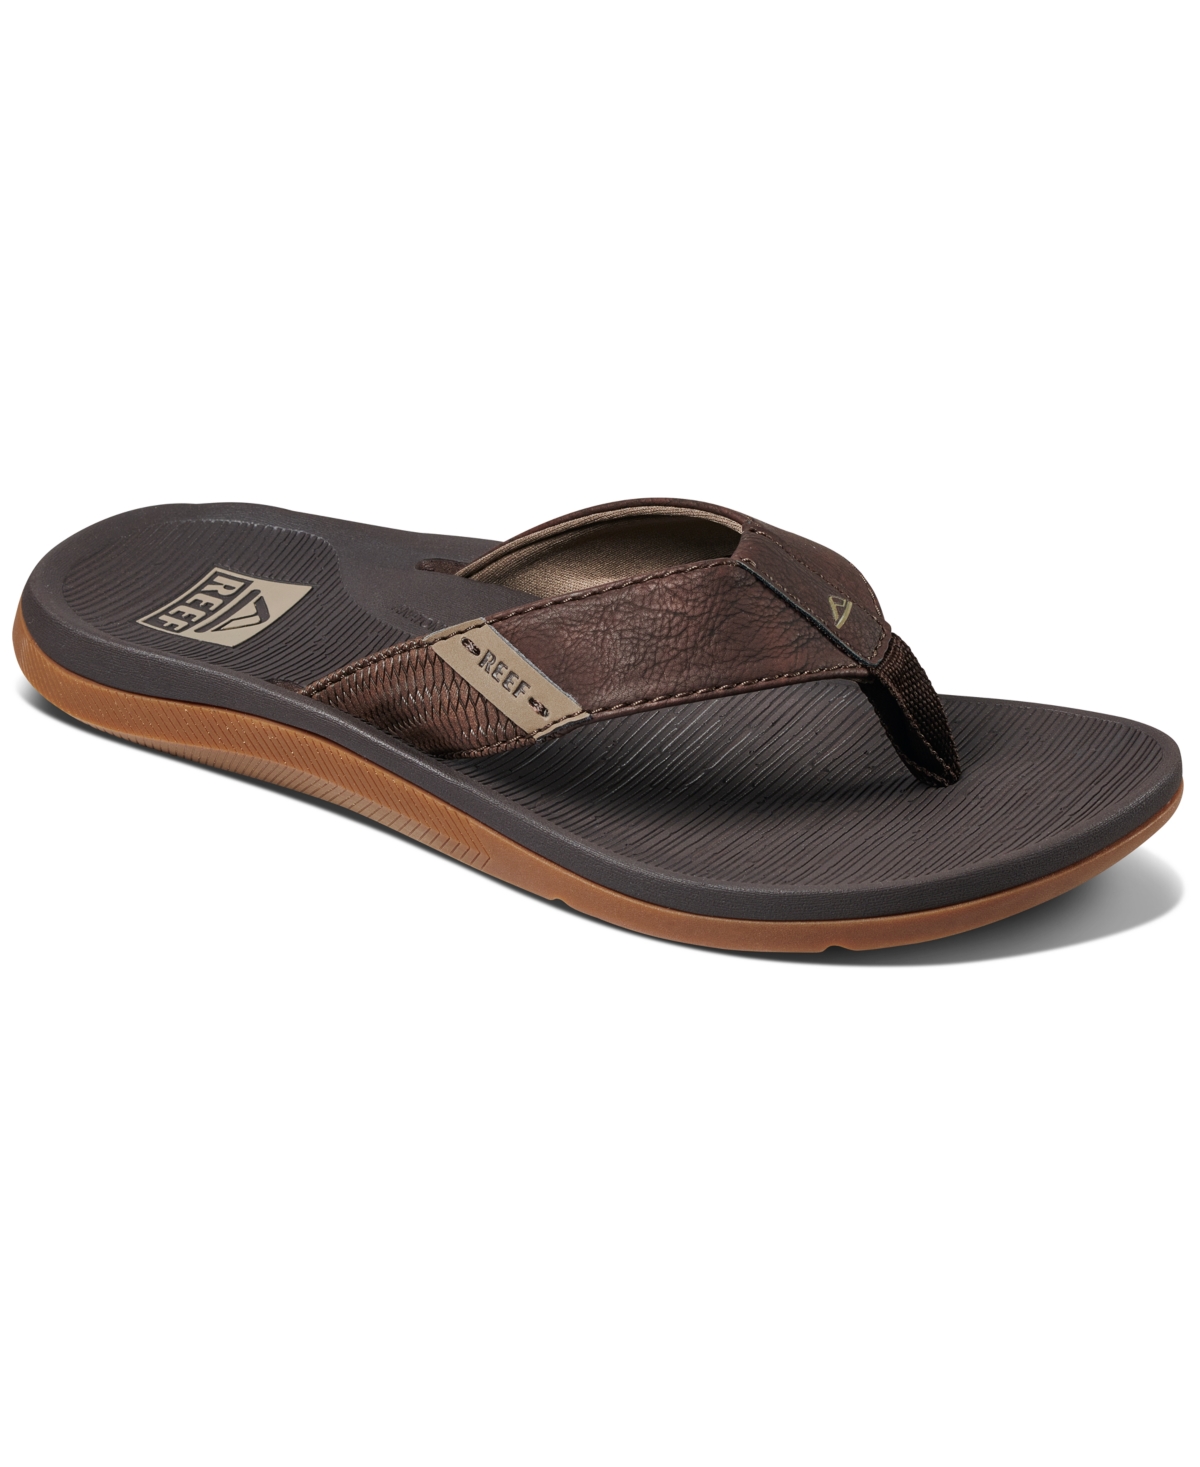 Men's Santa Ana Padded & Waterproof Flip-Flop Sandal - Brown